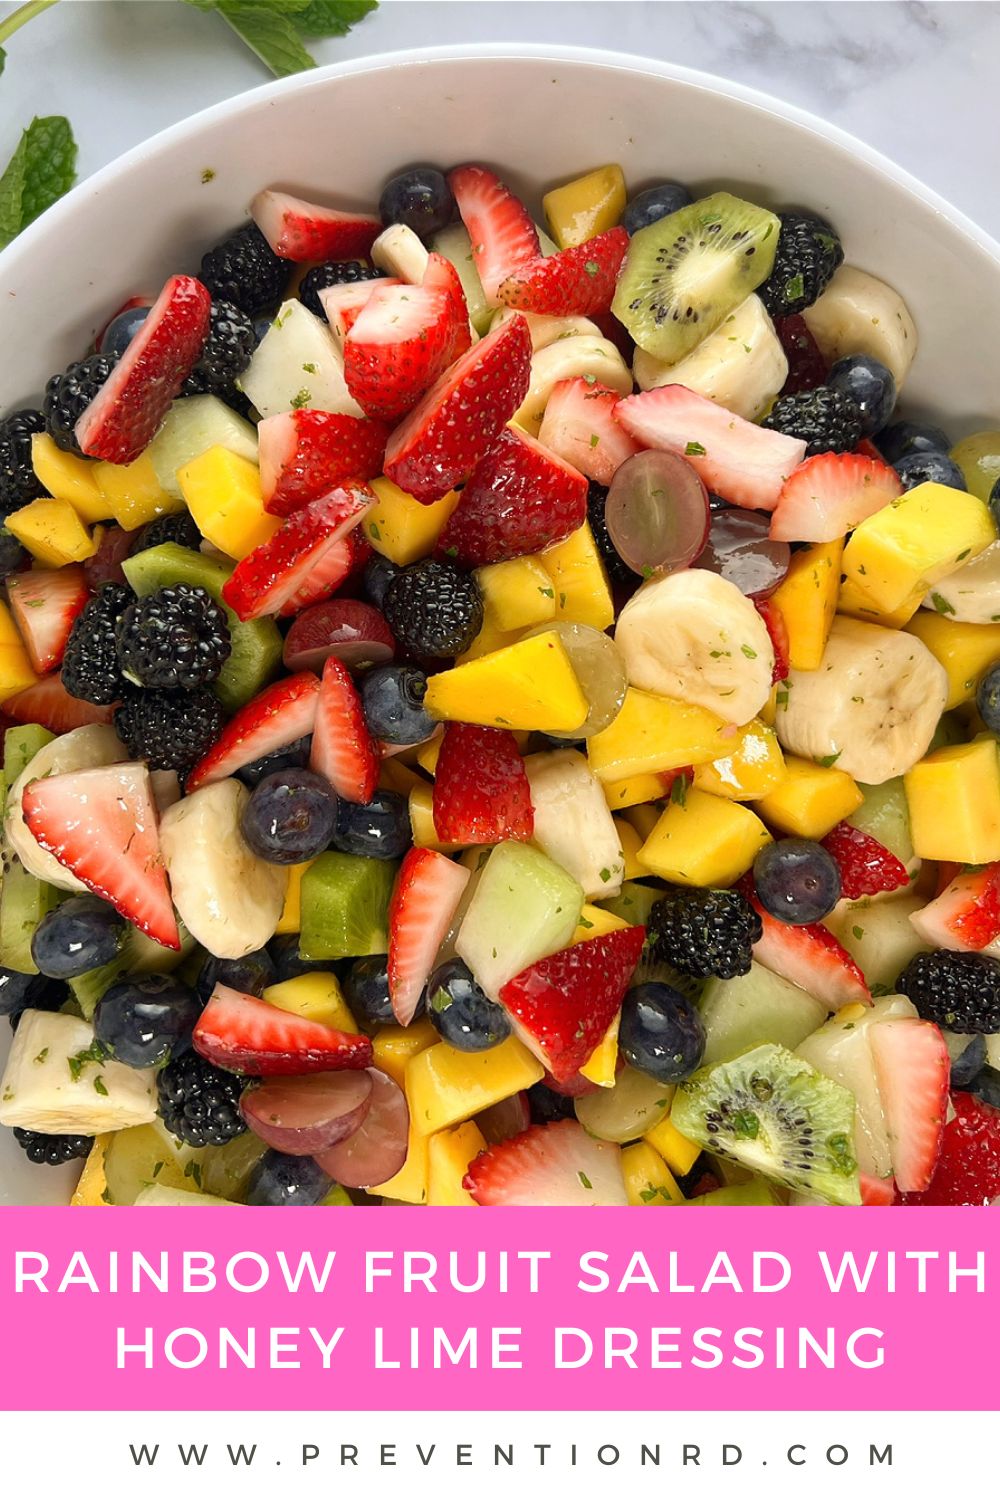 Rainbow Fruit Salad with Honey Lime Dressing via @preventionrd